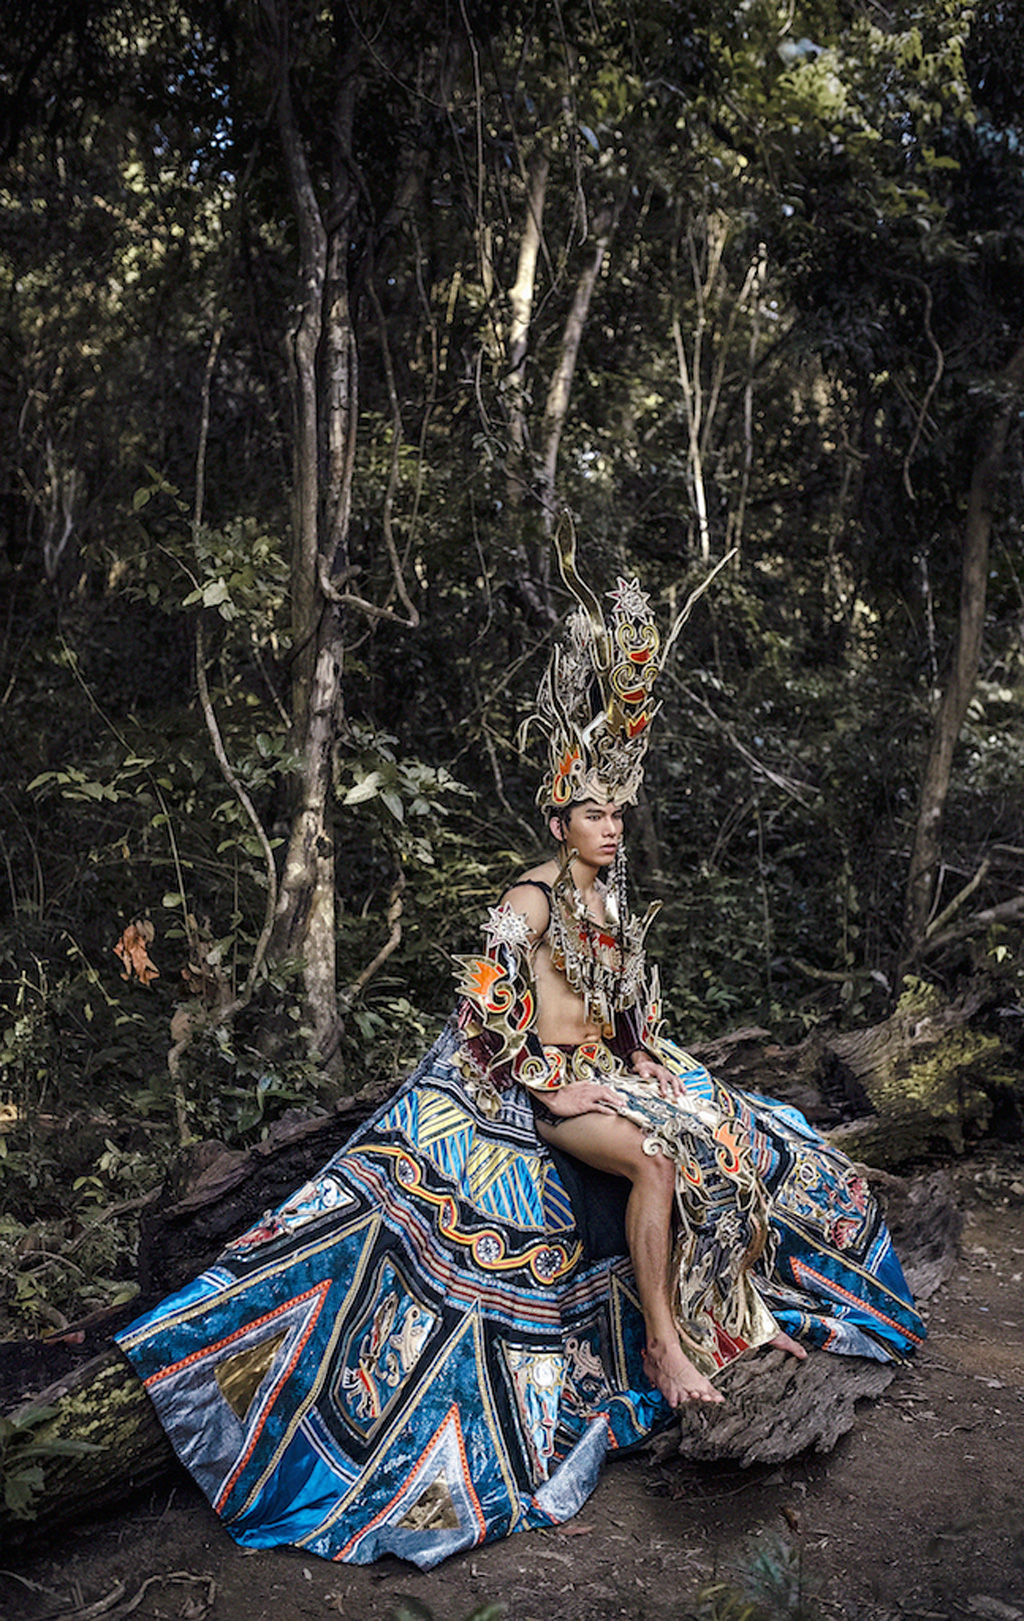 Siêu mẫu Ngọc Tình oai dũng trong trang phục dân tộc dự thi Nam vương Đại sứ Hoàn vũ 5